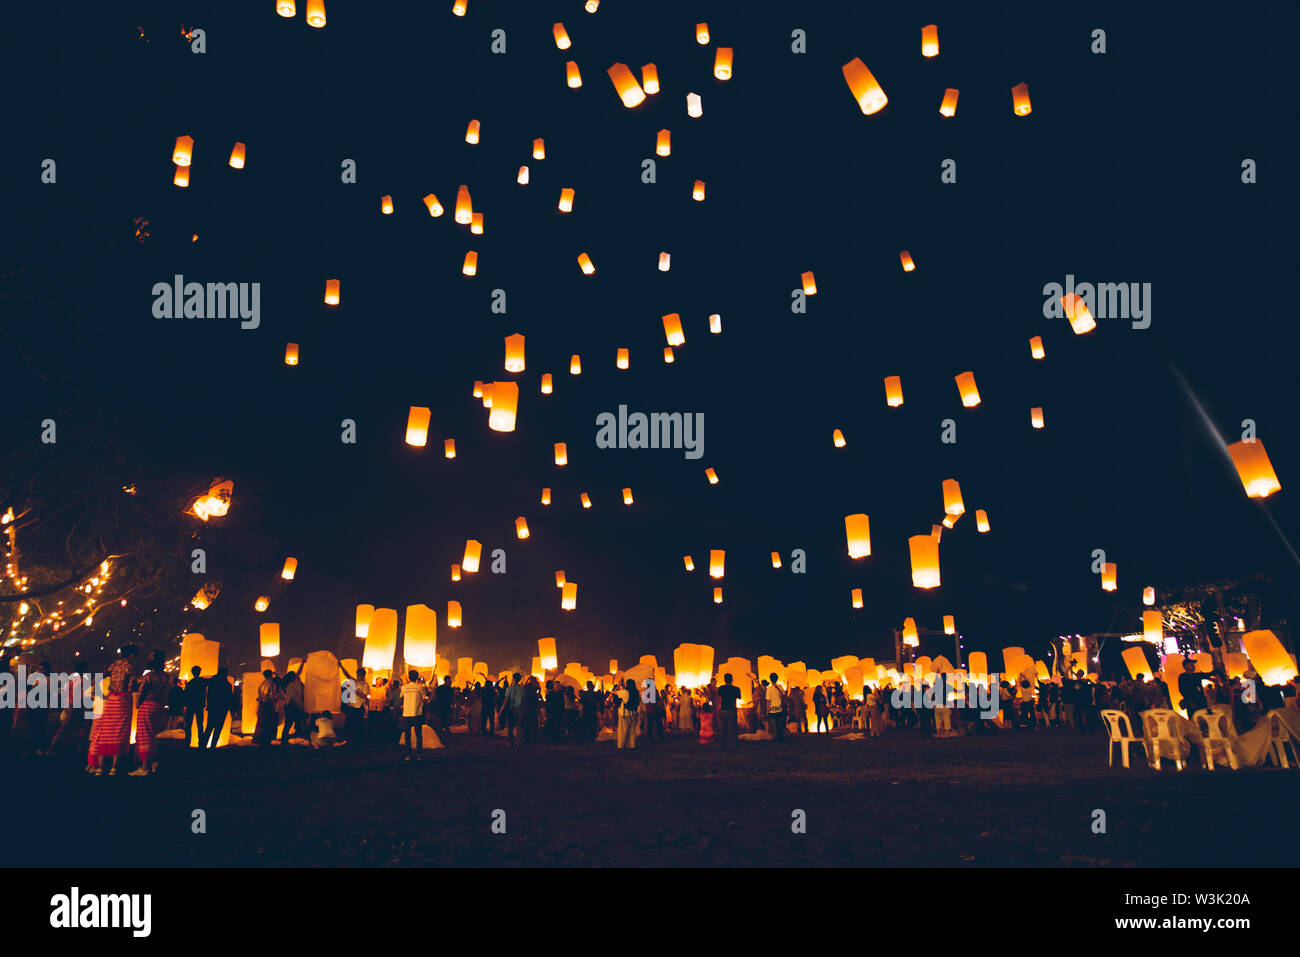 Loy Krathong festival, fête du nouvel an thaï avec des lanternes flottantes de presse dans le ciel de nuit Banque D'Images